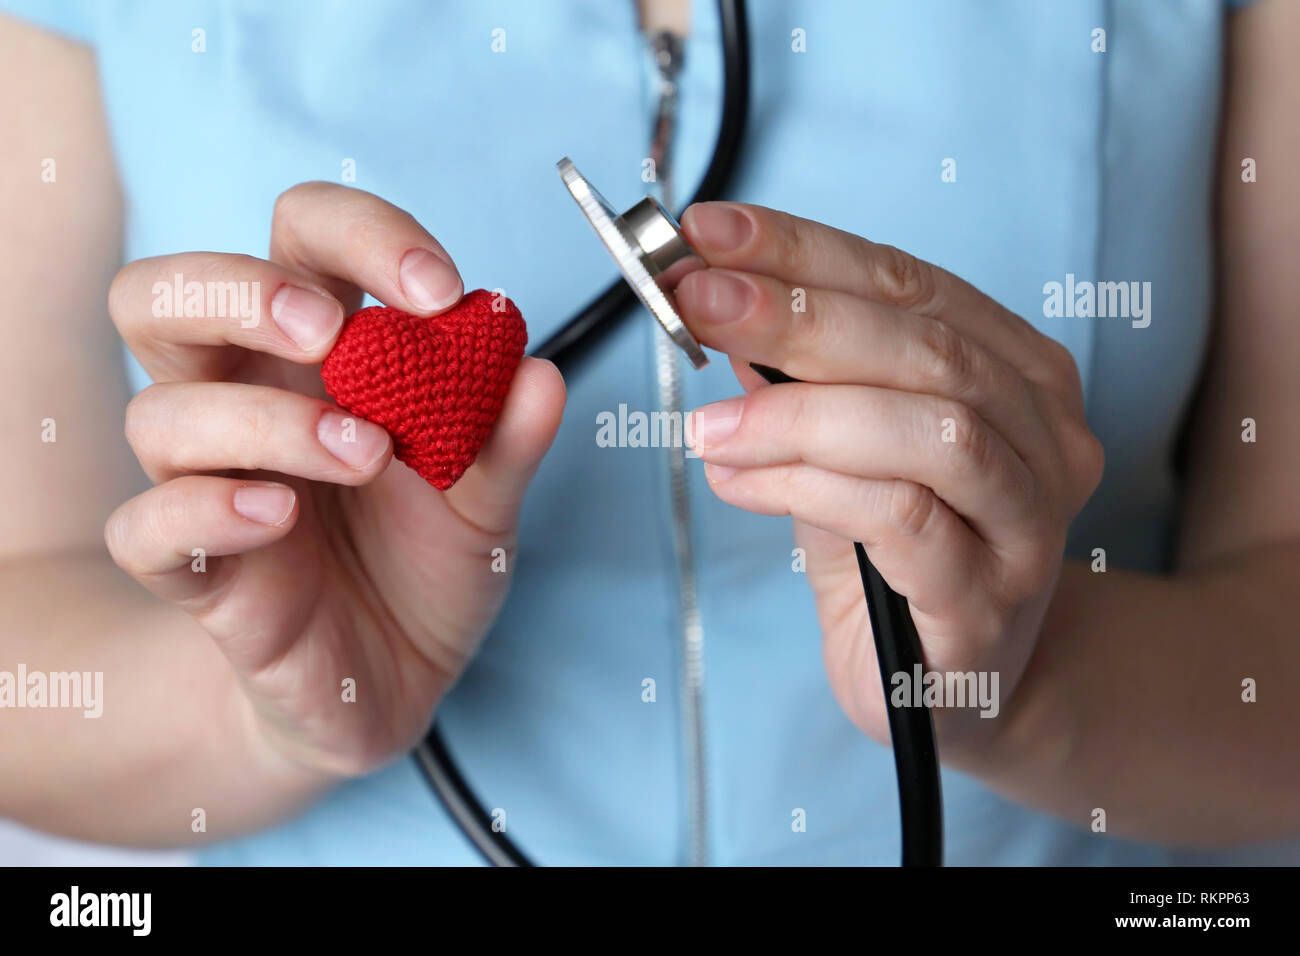 Frau Doktor mit Stethoskop und Rot gestrickt Herz in der Hand. Konzept der Kardiologen, Herz Krankheiten, Diagnose, Auskultation, medizinische Untersuchung Stockfoto